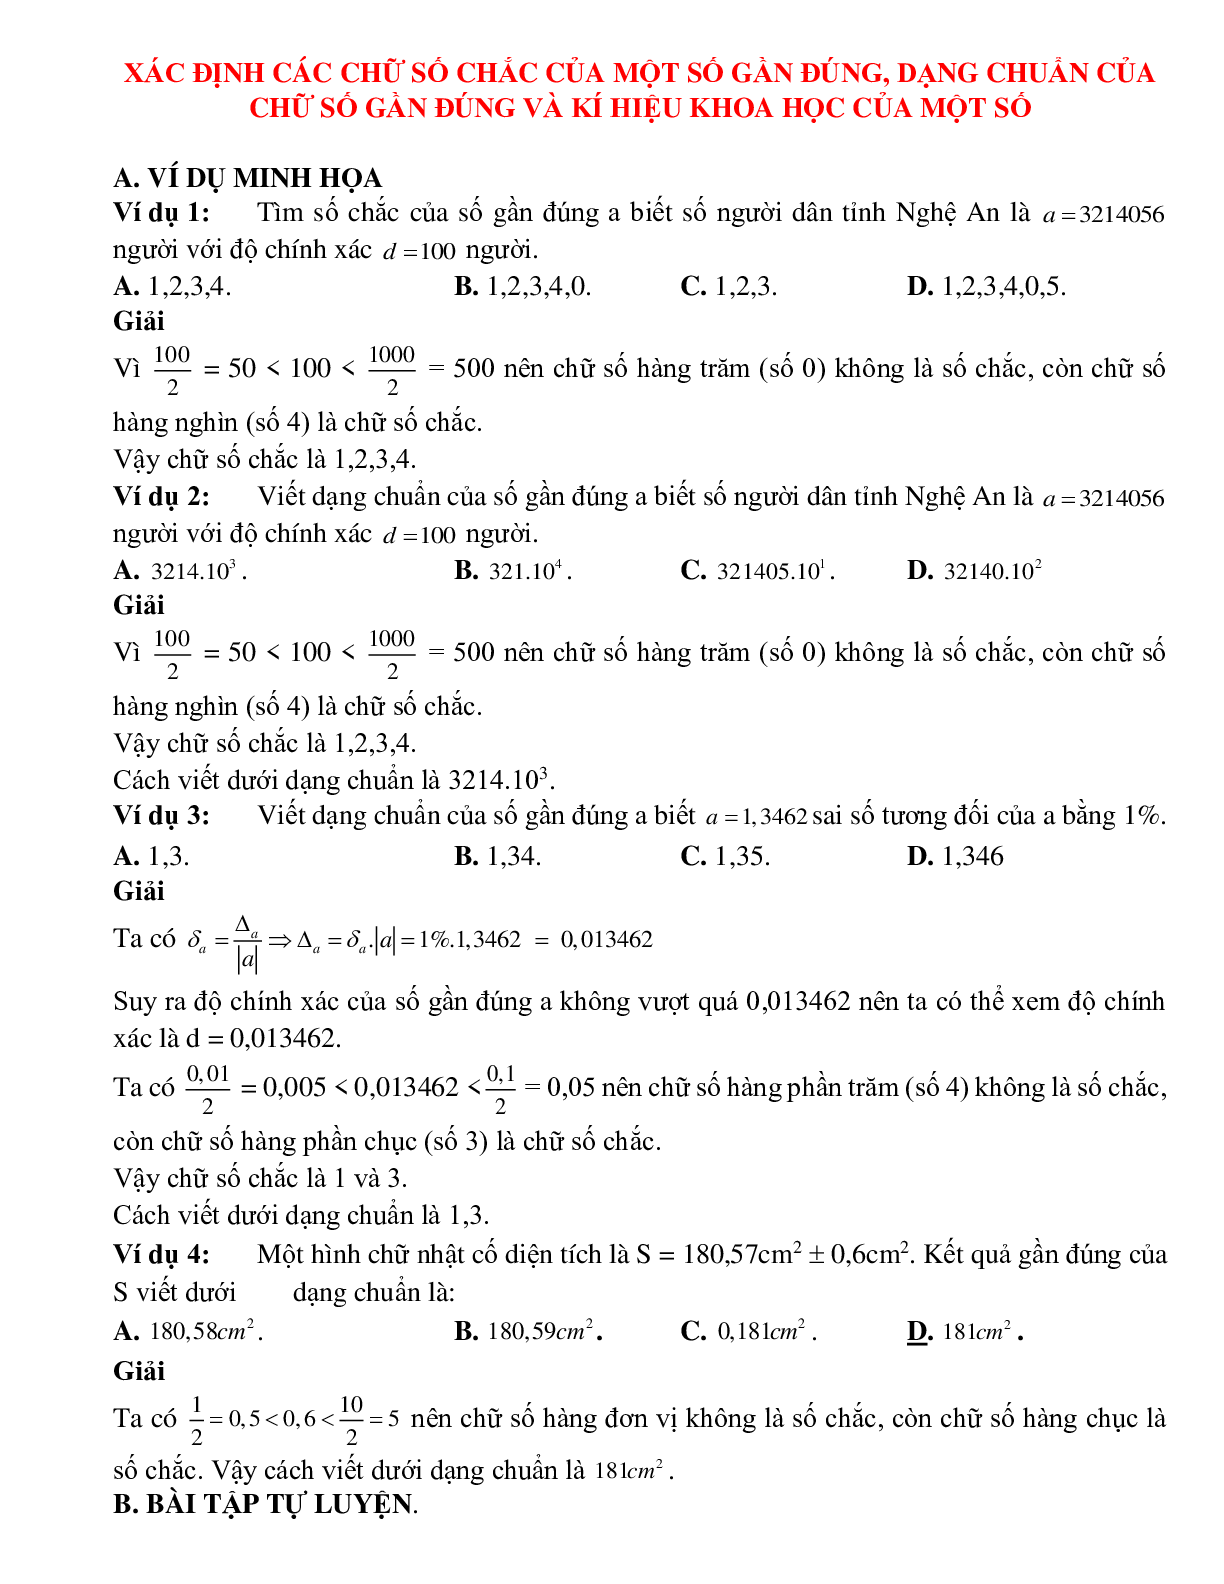 Bài tập tự luyện xác định các chữ số chắc của một số gần đúng Toán 10 (trang 1)